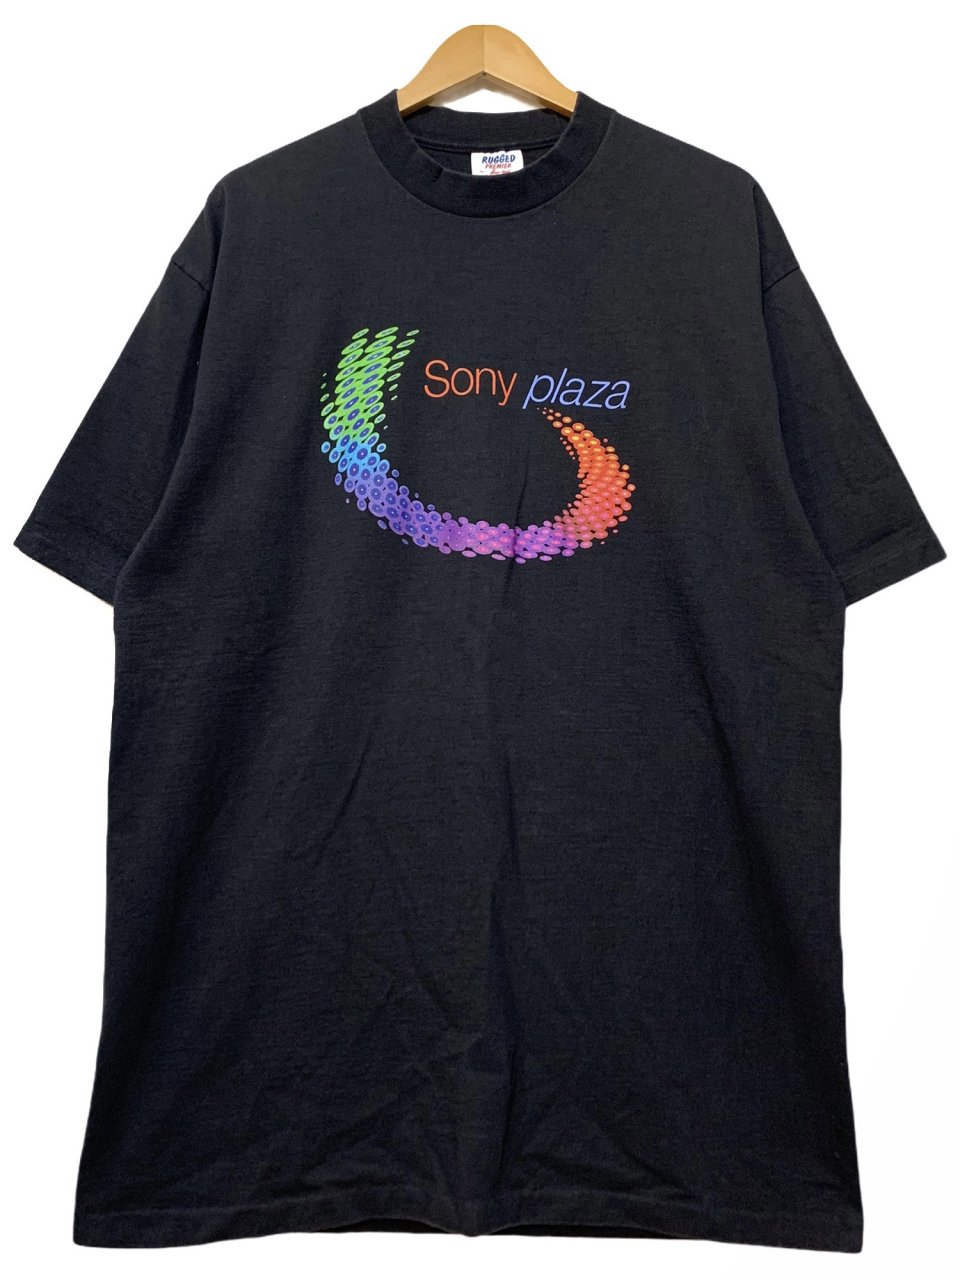 USA製 90s SONY PLAZA Print S/S Tee 黒 XL ソニープラザ 半袖 Tシャツ 